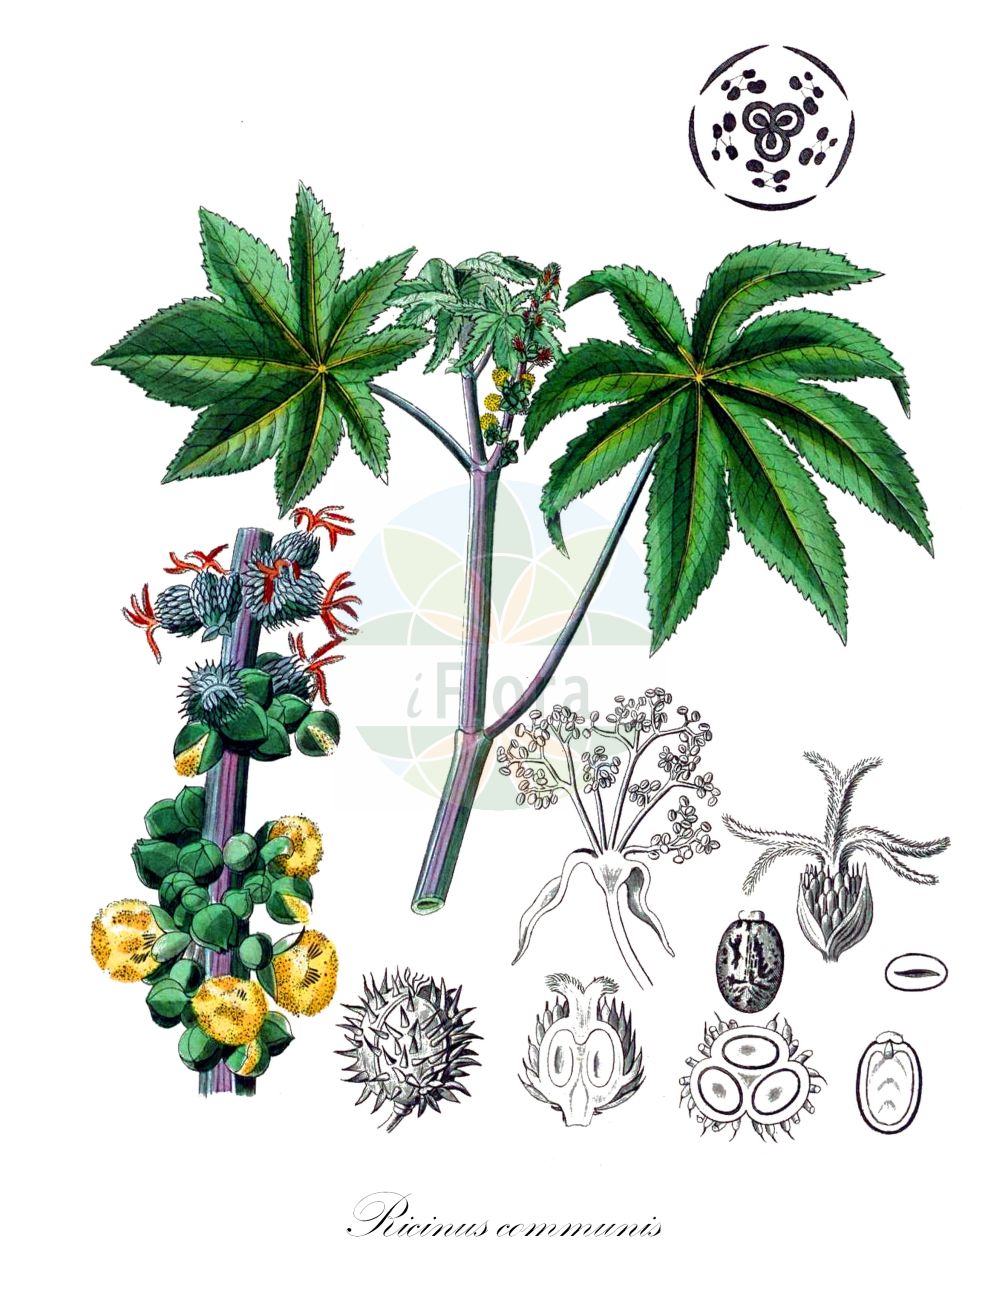 Historische Abbildung von Ricinus communis (Wunderbaum - Castor-oil-Plant). ---- Historical Drawing of Ricinus communis (Wunderbaum - Castor-oil-Plant).(Ricinus communis,Wunderbaum,Castor-oil-Plant,Cataputia major,Cataputia minor,Croton spinosus,Ricinus africanus,Ricinus angulatus,Ricinus armatus,Ricinus atropurpureus,Ricinus badius,Ricinus borboniensis,Ricinus cambodgensis,Ricinus communis,Ricinus compactus,Ricinus digitatus,Ricinus europaeus,Ricinus gibsonii,Ricinus giganteus,Ricinus glaucus,Ricinus hybridus,Ricinus inermis,Ricinus japonicus,Ricinus krappa,Ricinus laevis,Ricinus leucocarpus,Ricinus lividus,Ricinus macrocarpus,Ricinus macrophyllus,Ricinus medicus,Ricinus medius,Ricinus megalosperma,Ricinus messeniacus,Ricinus metallicus,Ricinus microcarpus,Ricinus minor,Ricinus nanus,Ricinus obermannii,Ricinus peltatus,Ricinus perennis,Ricinus persicus,Ricinus purpurascens,Ricinus ruber,Ricinus rugosus,Ricinus rutilans,Ricinus sanguineus,Ricinus scaber,Ricinus speciosus,Ricinus spectabilis,Ricinus tunisensis,Ricinus undulatus,Ricinus urens,Ricinus viridis,Ricinus vulgaris,Ricinus zanzibarensis,Ricinus zanzibarinus,Wunderbaum,Rizinus,Castor-oil-Plant,Castor Bean,Ricinus,Wunderbaum,Castor Bean,Euphorbiaceae,Wolfsmilchgewächse,Spurge family,Kohl (1891-1895))